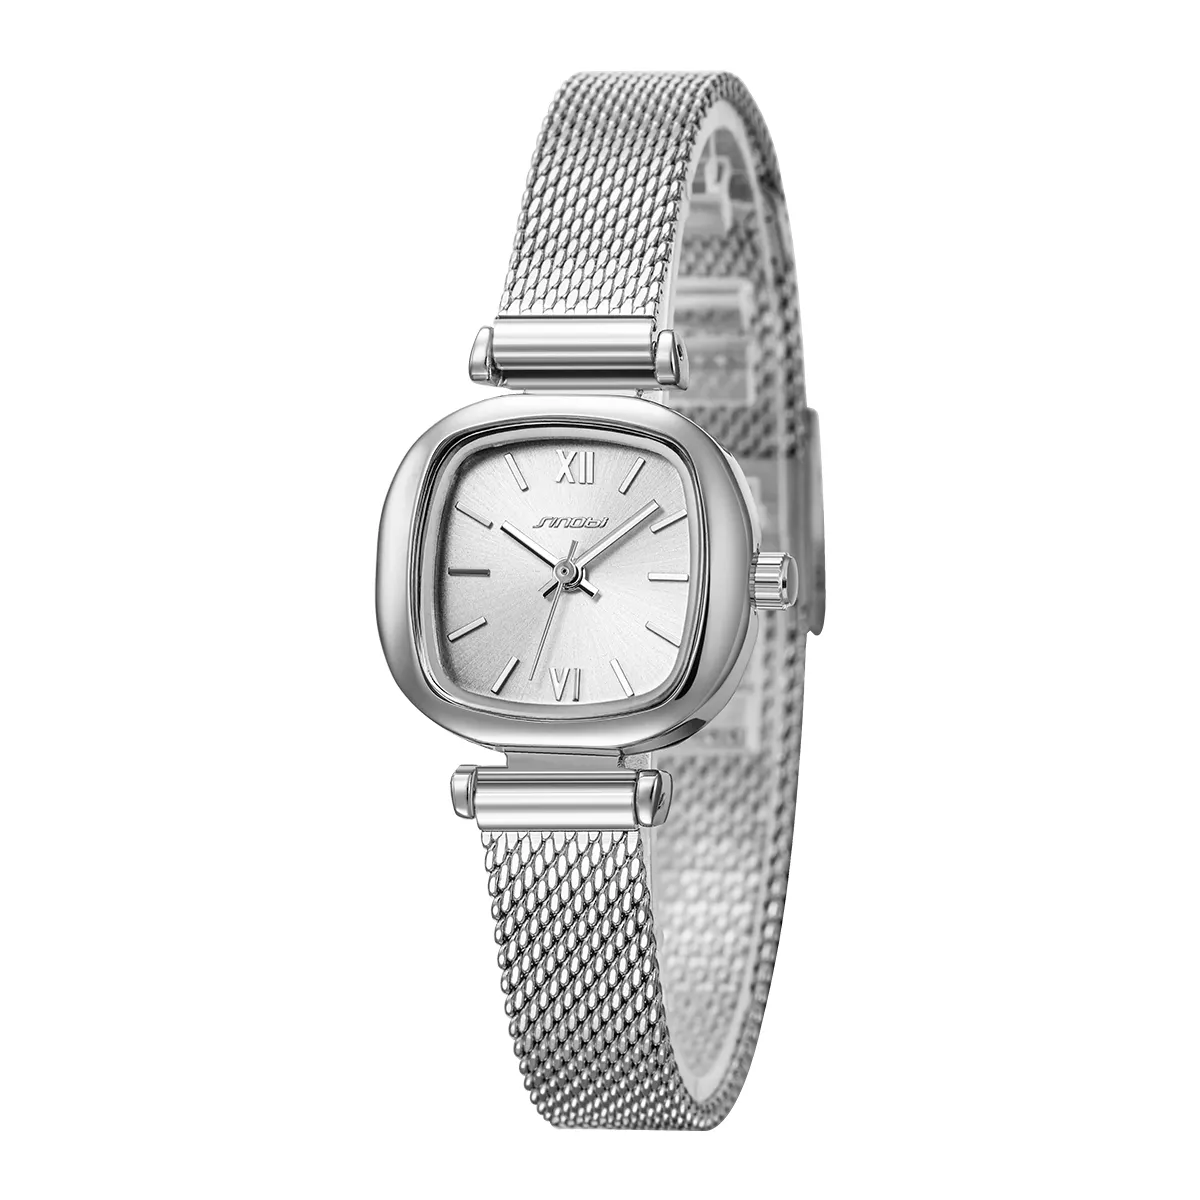 उच्च गुणवत्ता वाली महिला घड़ियों के साथ अपनी शैली को उन्नत करें, चीन की अग्रणी घड़ी फैक्ट्री से शीर्ष बिक्री